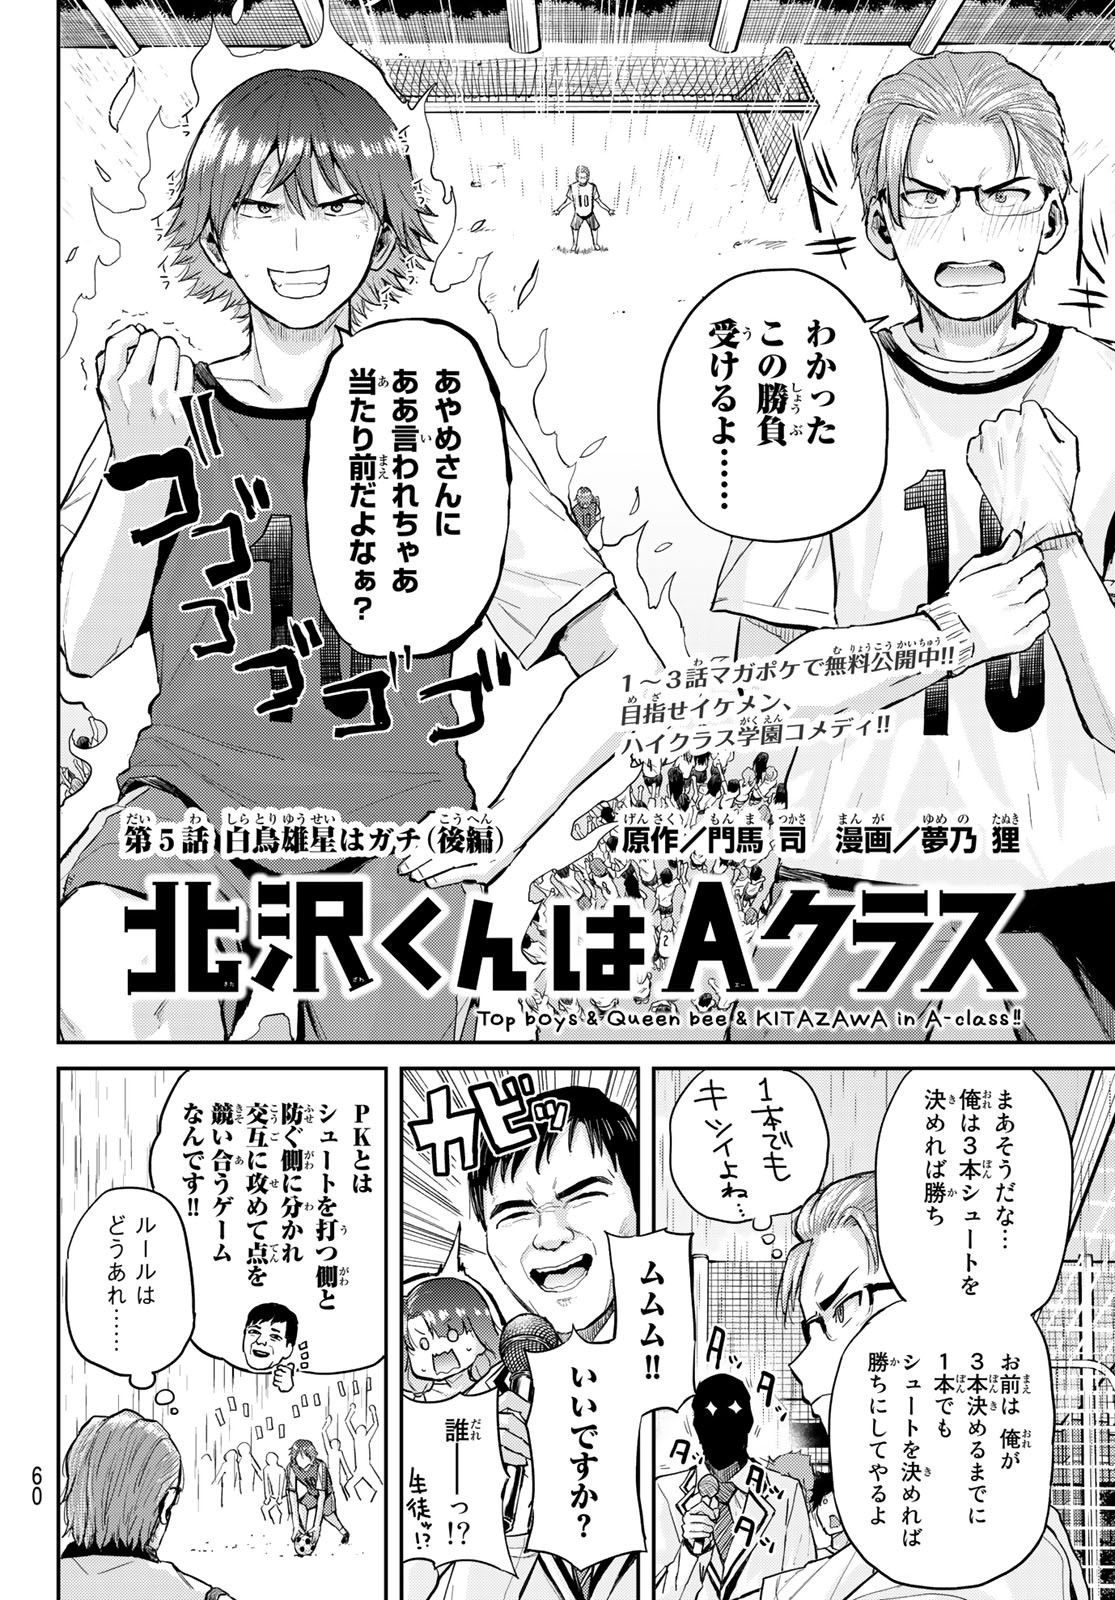 Kitazawa-kun wa A Class - Chapter 005 - Page 2